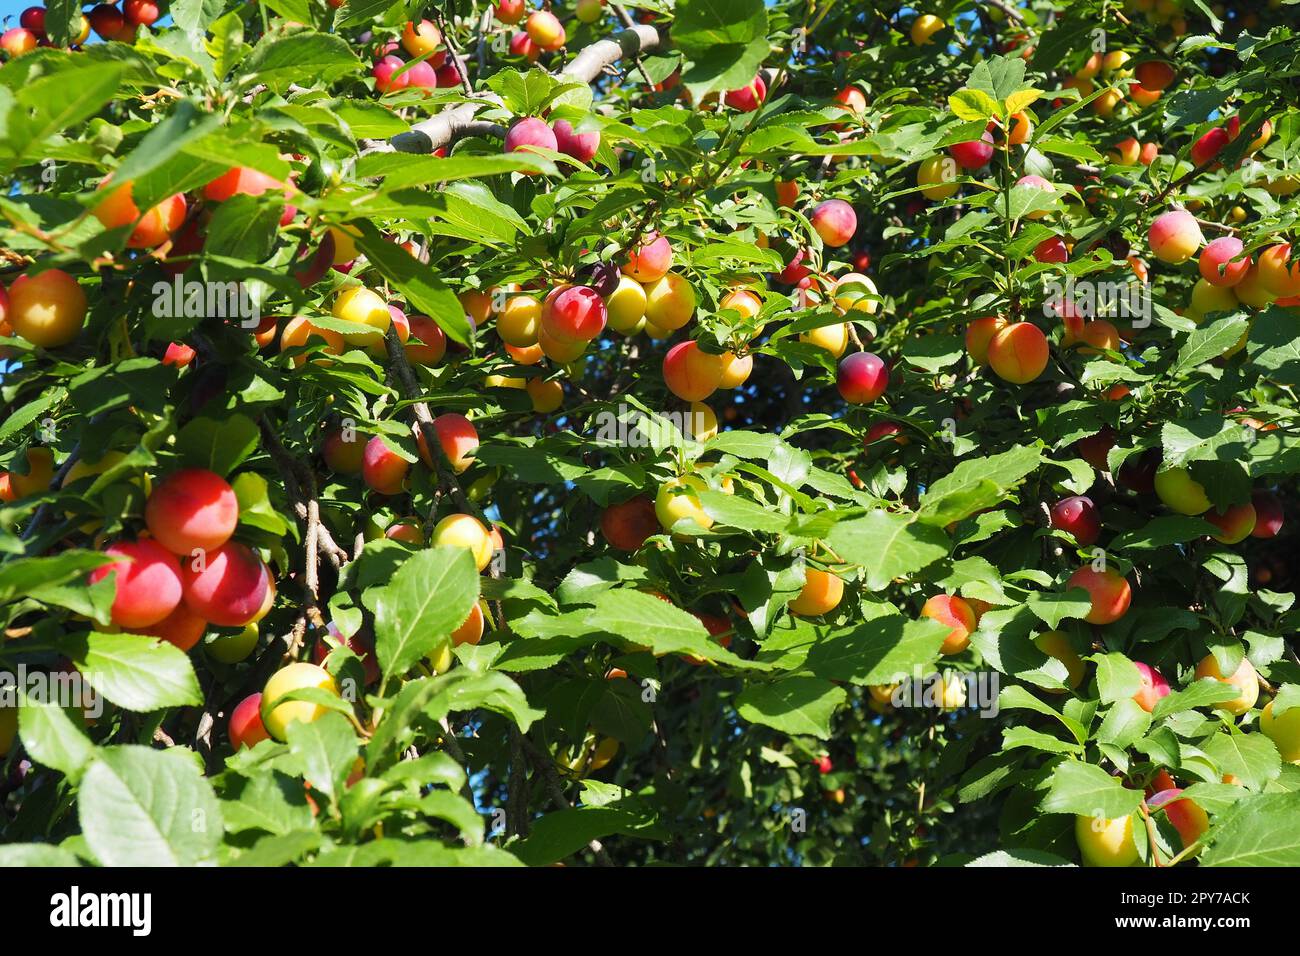 Prunus cerasifera è una specie di prugna conosciuta con i nomi comuni di prugna di ciliegio e prugna di mirobalano. albero ornamentale per giardini e giardini. Frutti di prugna gialli e rossi sui rami Foto Stock